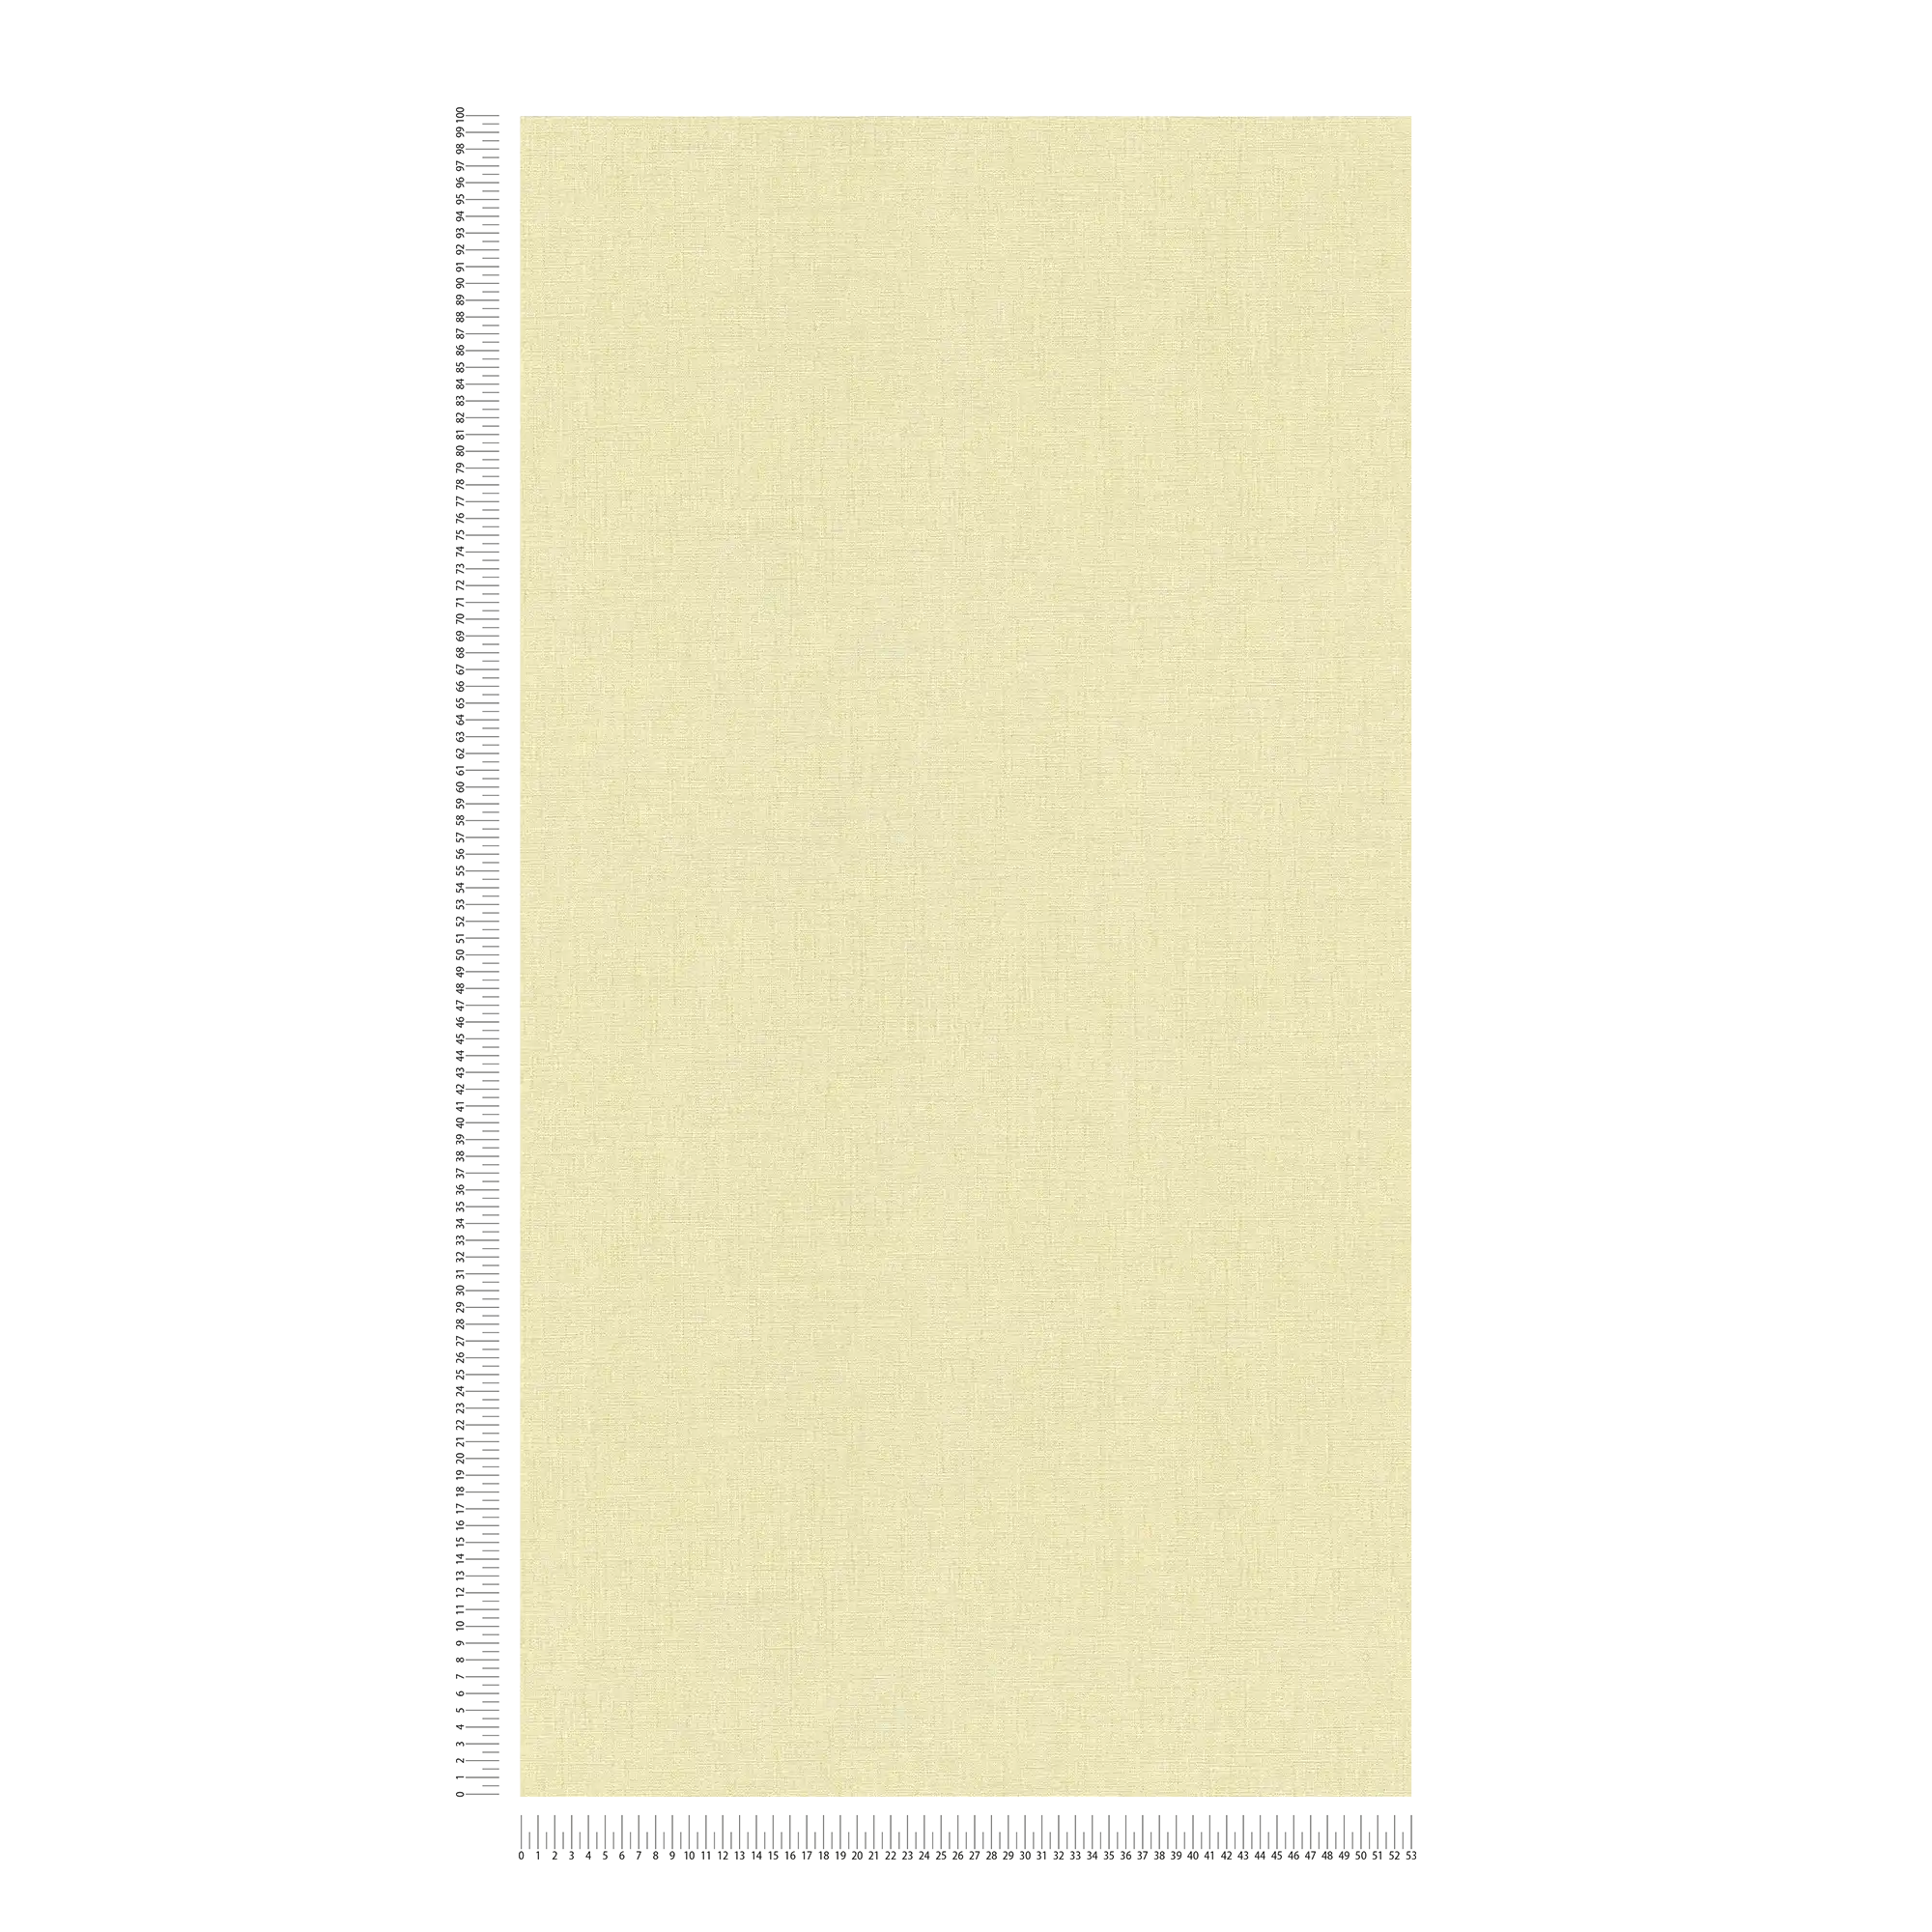             papier peint en papier uni légèrement structuré, aspect mat - jaune, vert
        